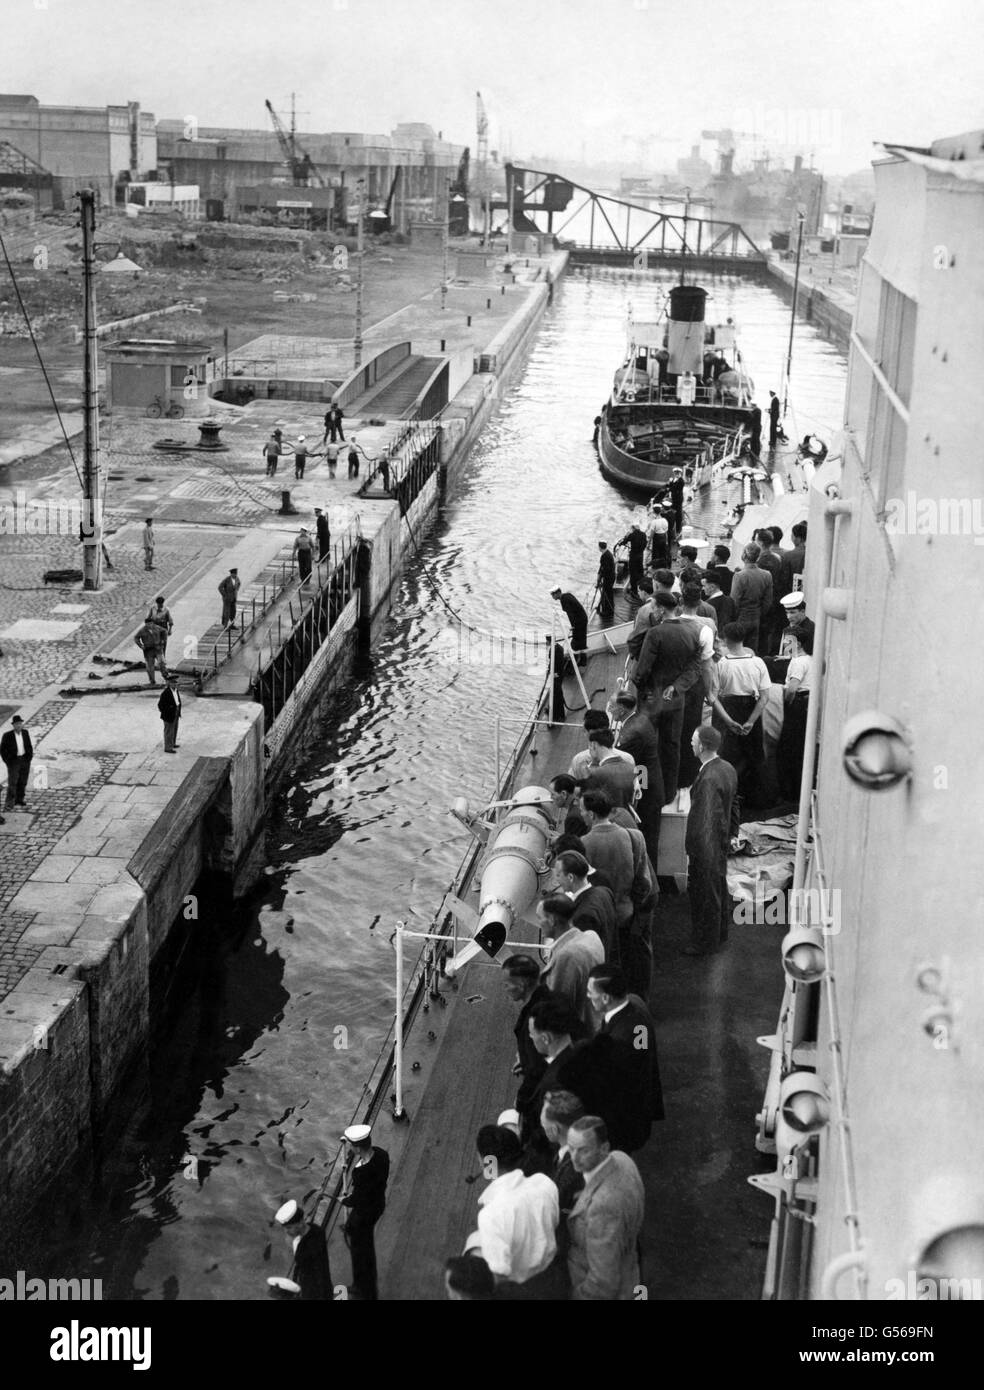 Ex-Commandos an Bord der HMS Sirius segeln in den Hafen von St. Nazaire, Frankreich. Sie waren Überlebende des Überfalls von St. Nazaire oder der Operation Chariot, eines erfolgreichen britischen Angriffs auf die stark verteidigte Normandie-Trockendock in St. Nazaire im deutsch besetzten Frankreich während des Zweiten Weltkriegs. Sie wurden von den Menschen der Stadt begrüßt, als sie mit einer Bronzetafel an Land marschierten, mit der Aufschrift "Sie haben viel erreicht, alles gewagt", für einen französisch vorbereiteten Monolith. Stockfoto